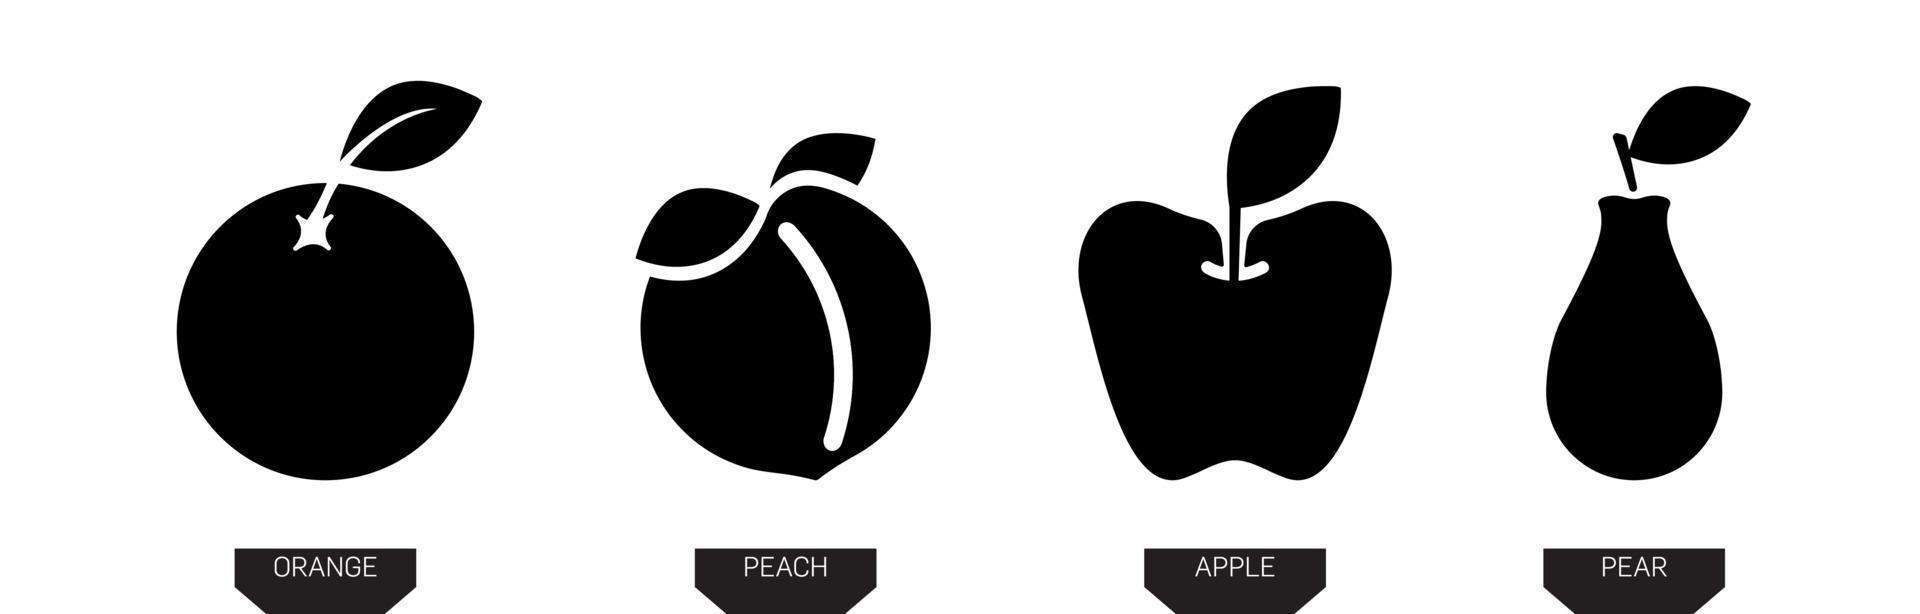 Obst-Symbole. Birnen-, Apfel-, Orangen- und Pfirsichschattenbild-Vektorikonenillustration in der schwarzen Farbe lokalisiert auf weißem Hintergrund. Silet-Frucht-Symbol. modernes Linienkunstdesign. vektor